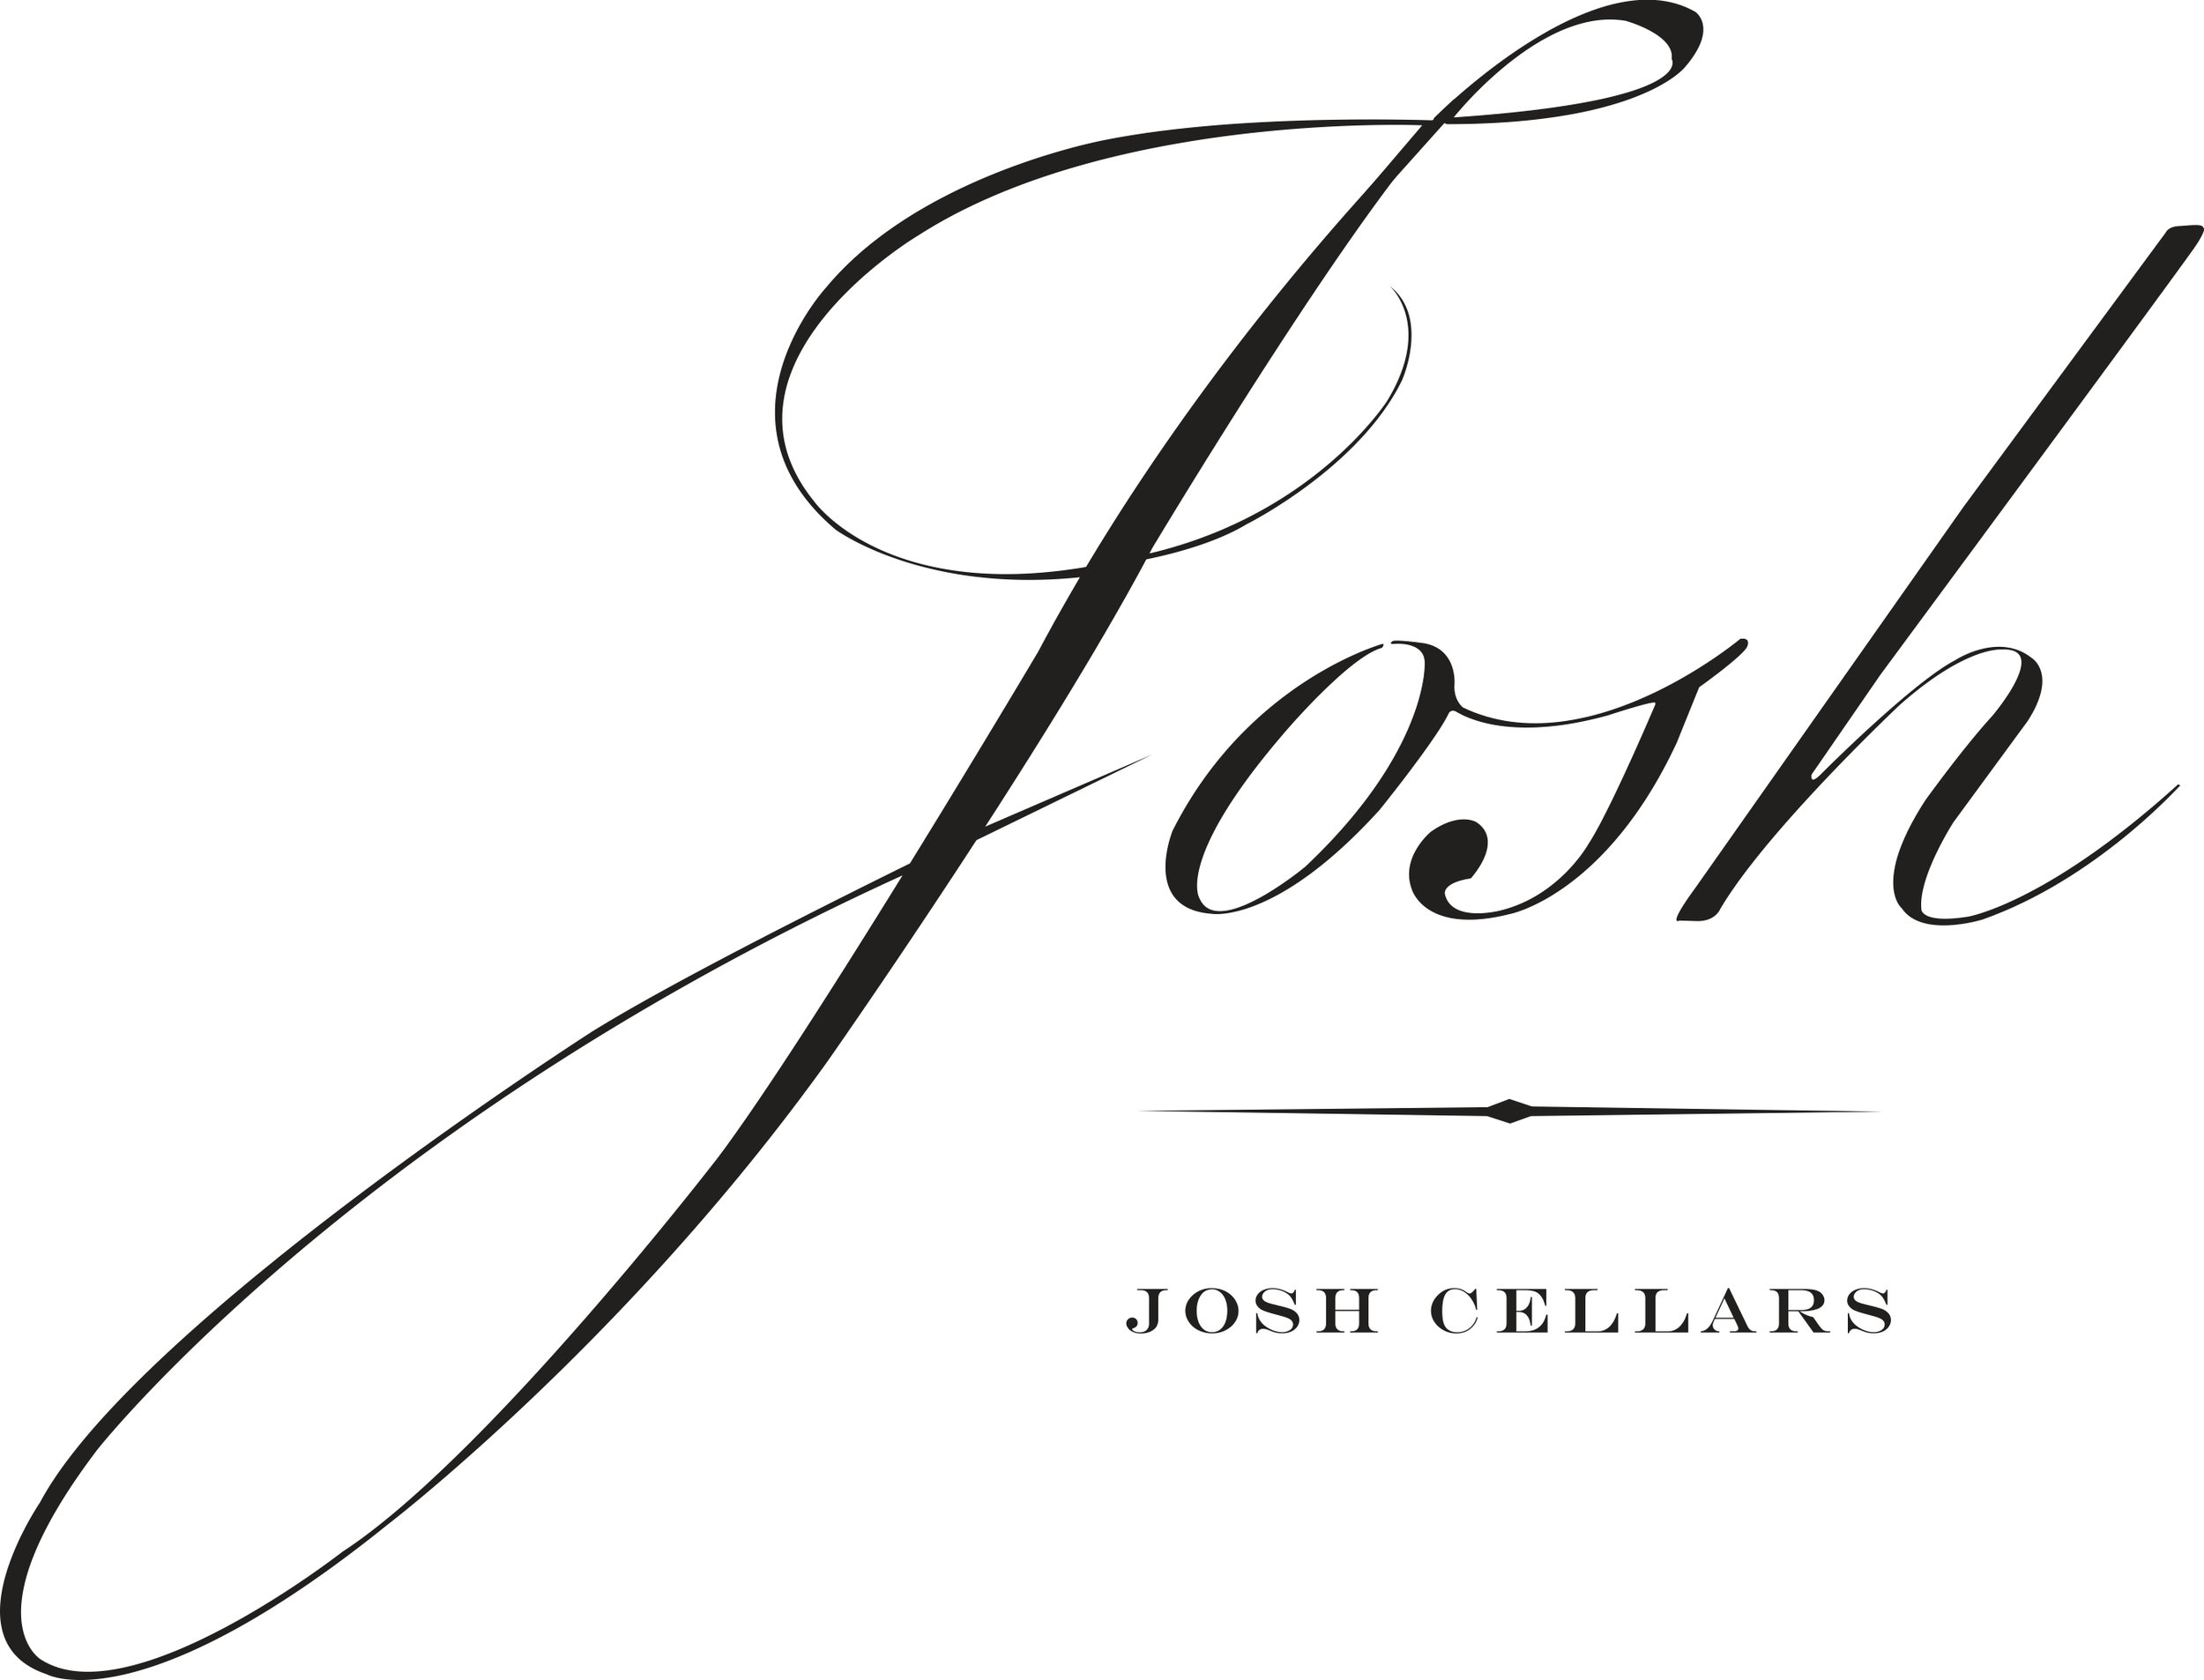 JOSH_logo.jpg